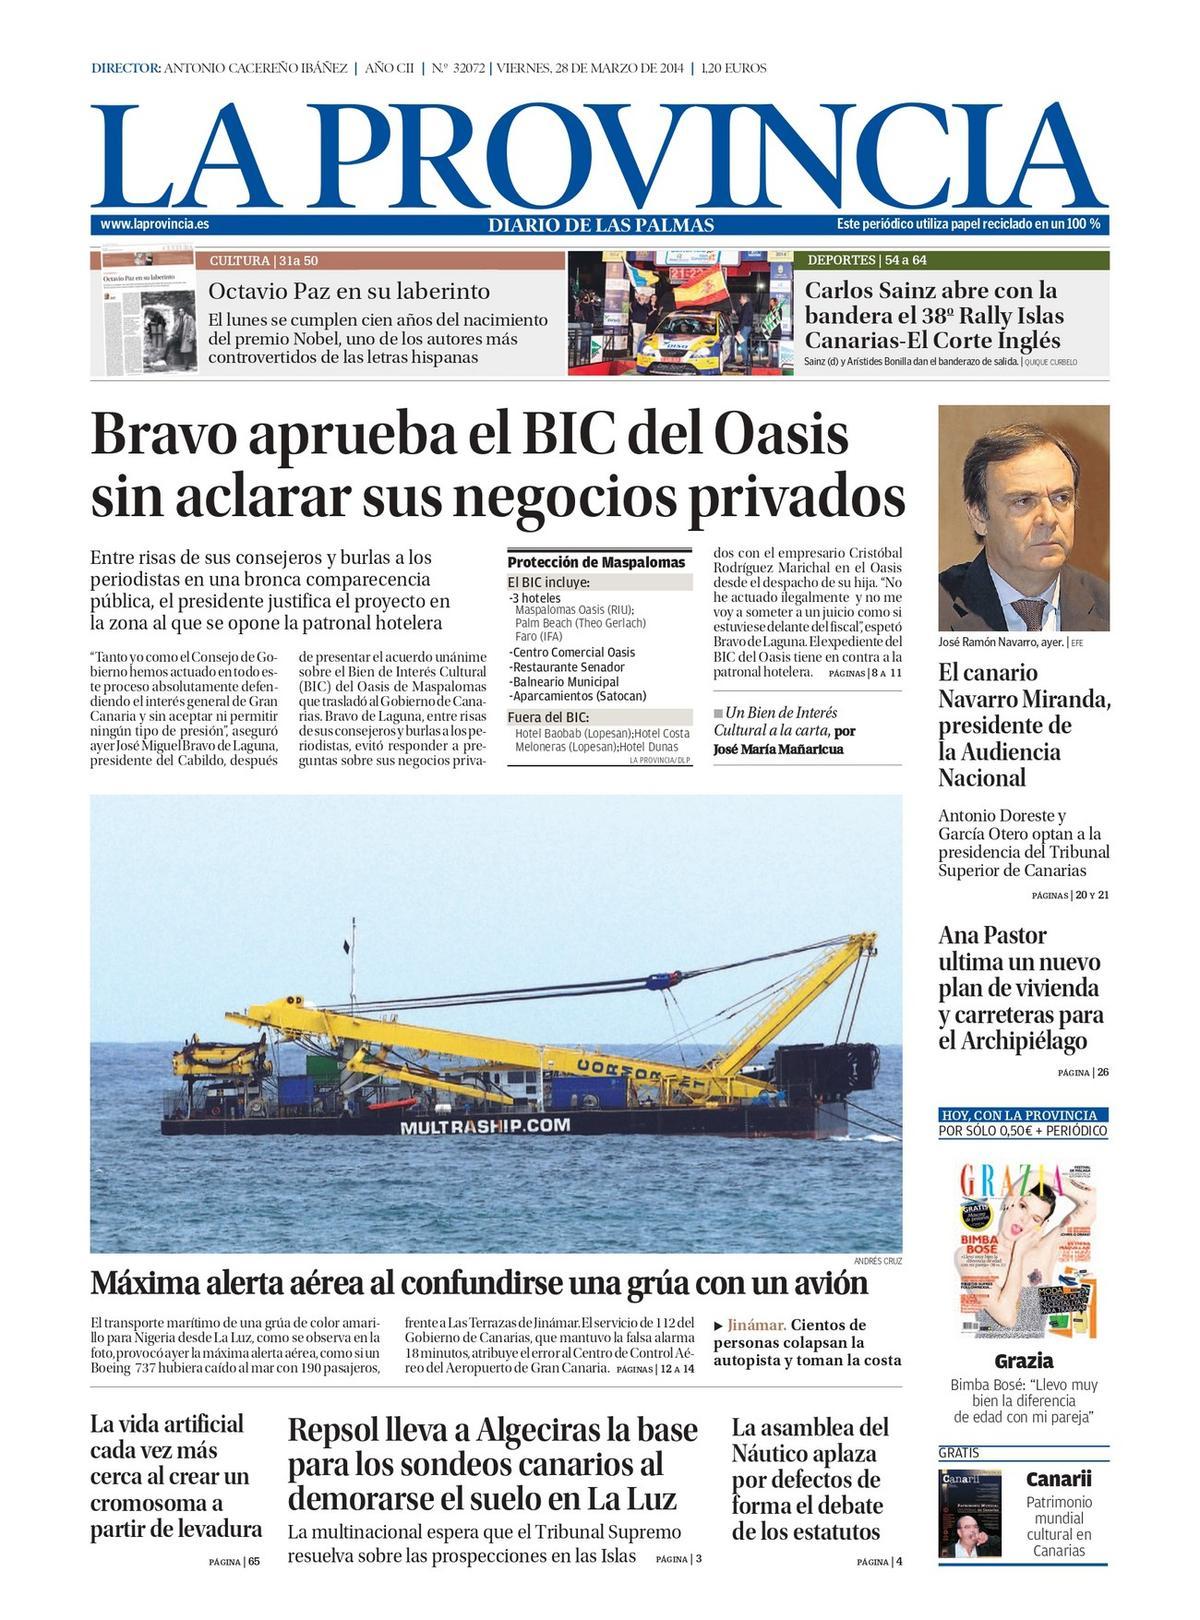 Imagen de la portada de LA PROVINCIA/DLP del 28 de marzo de 2014.